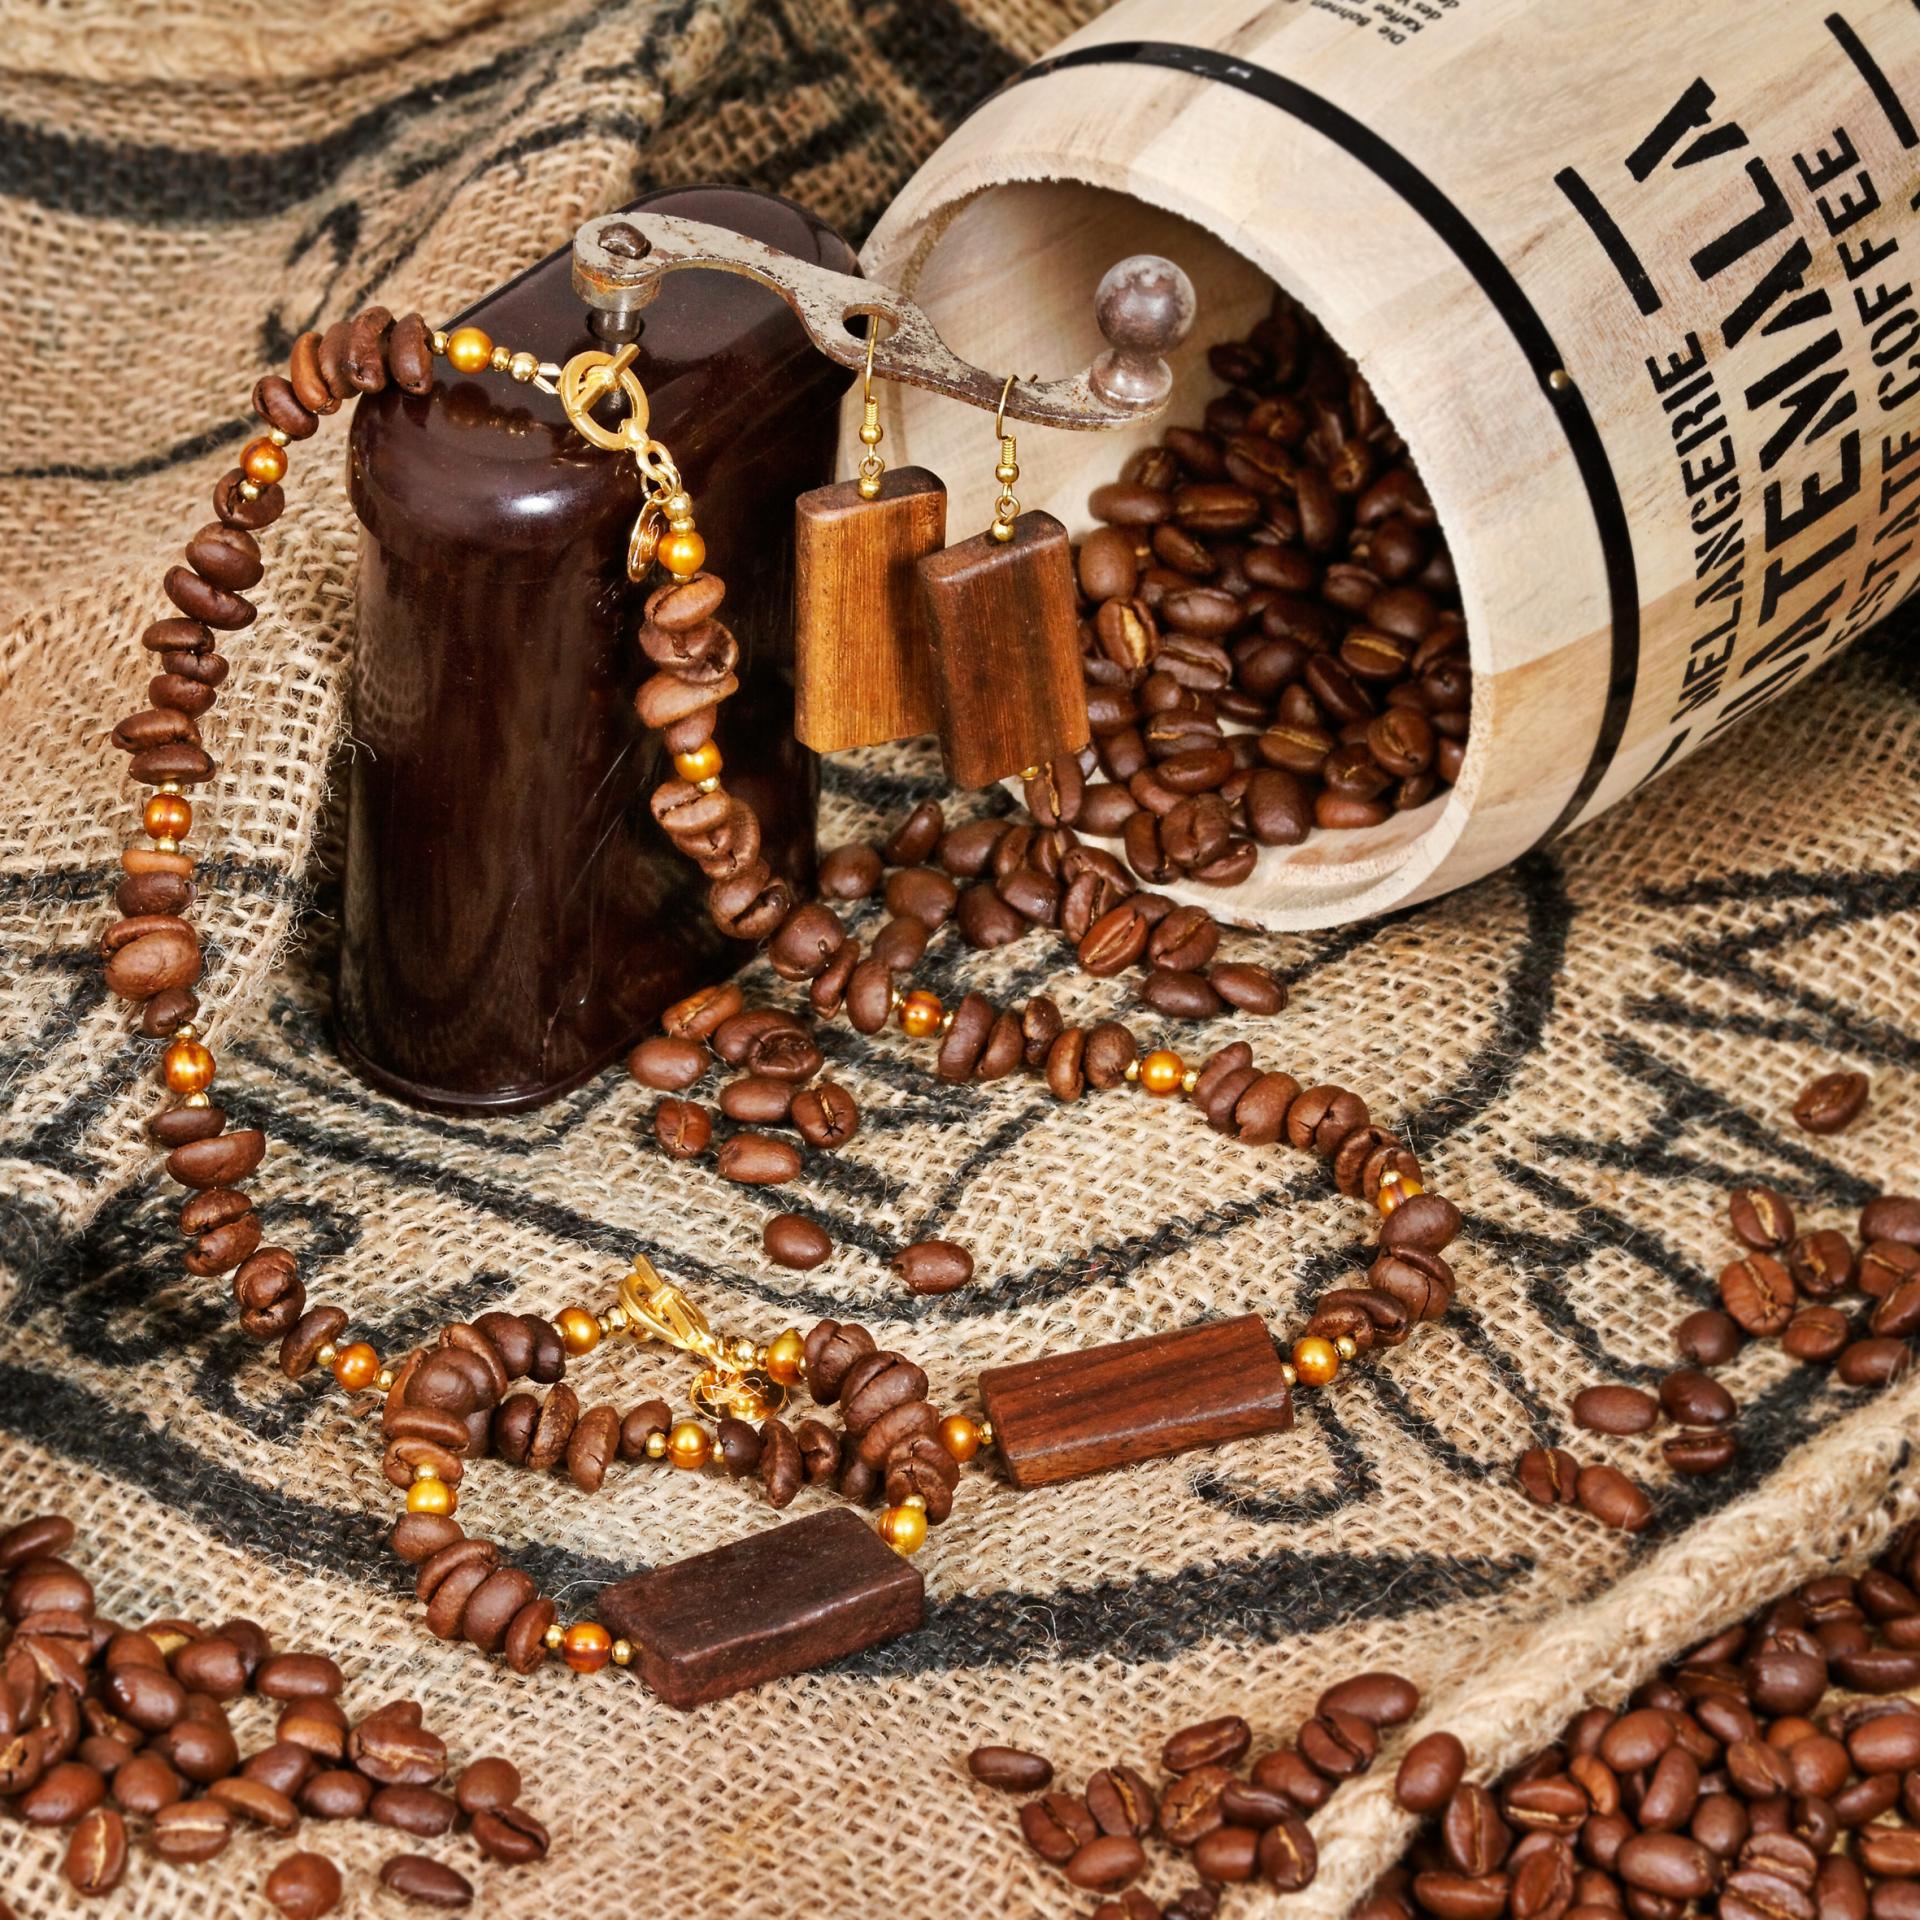 Andrea Hanschke: Coffea Arabica